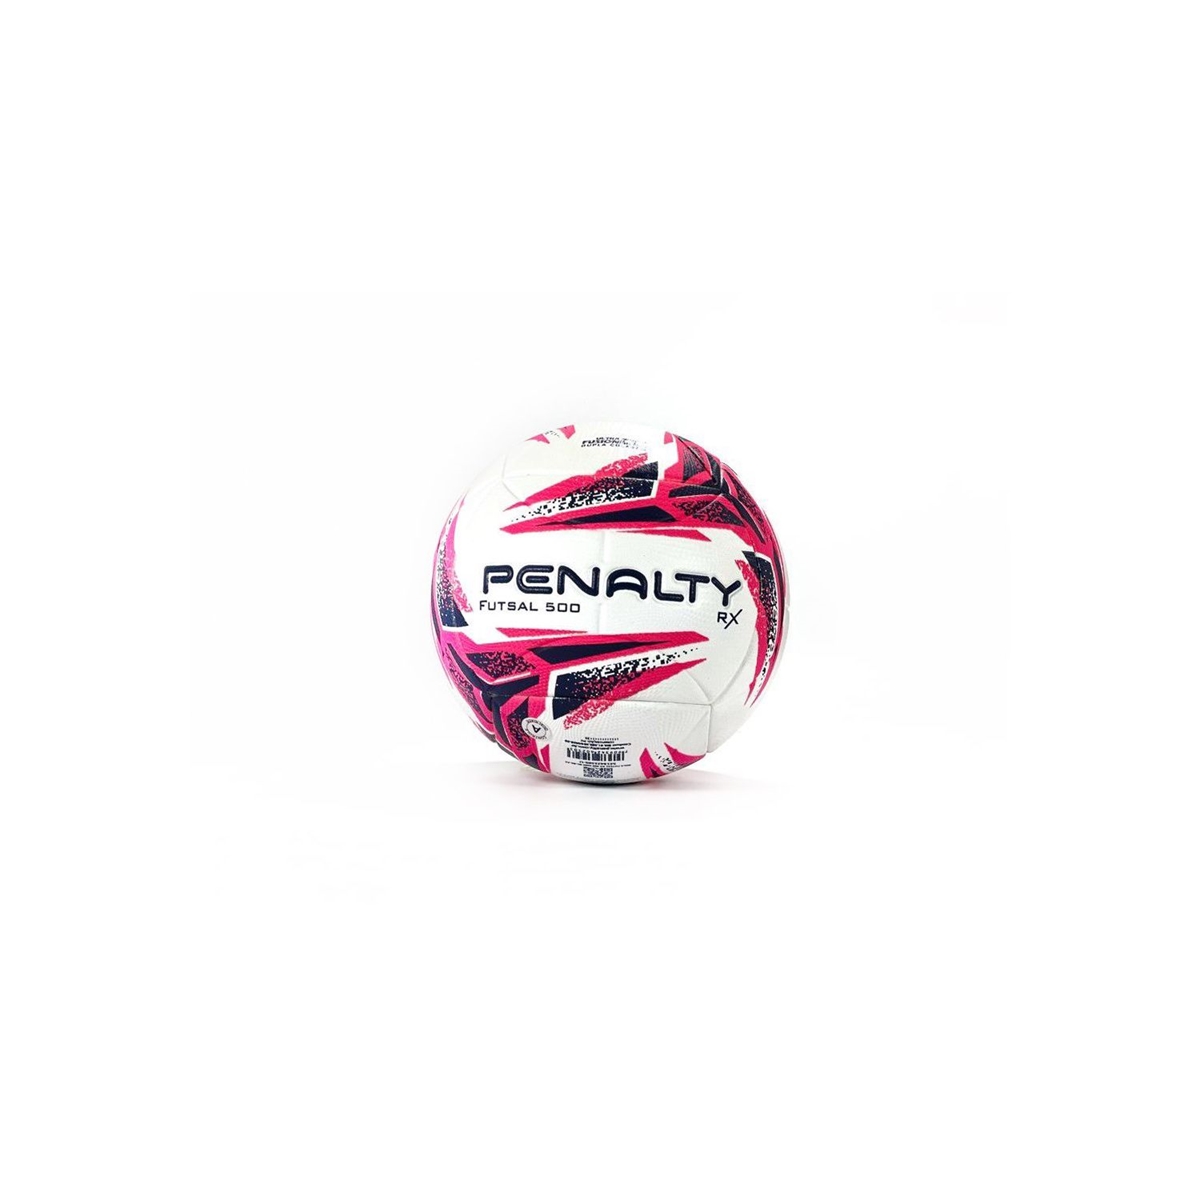 Bola Futsal RX 500 - Penalty - Artigos esportivos